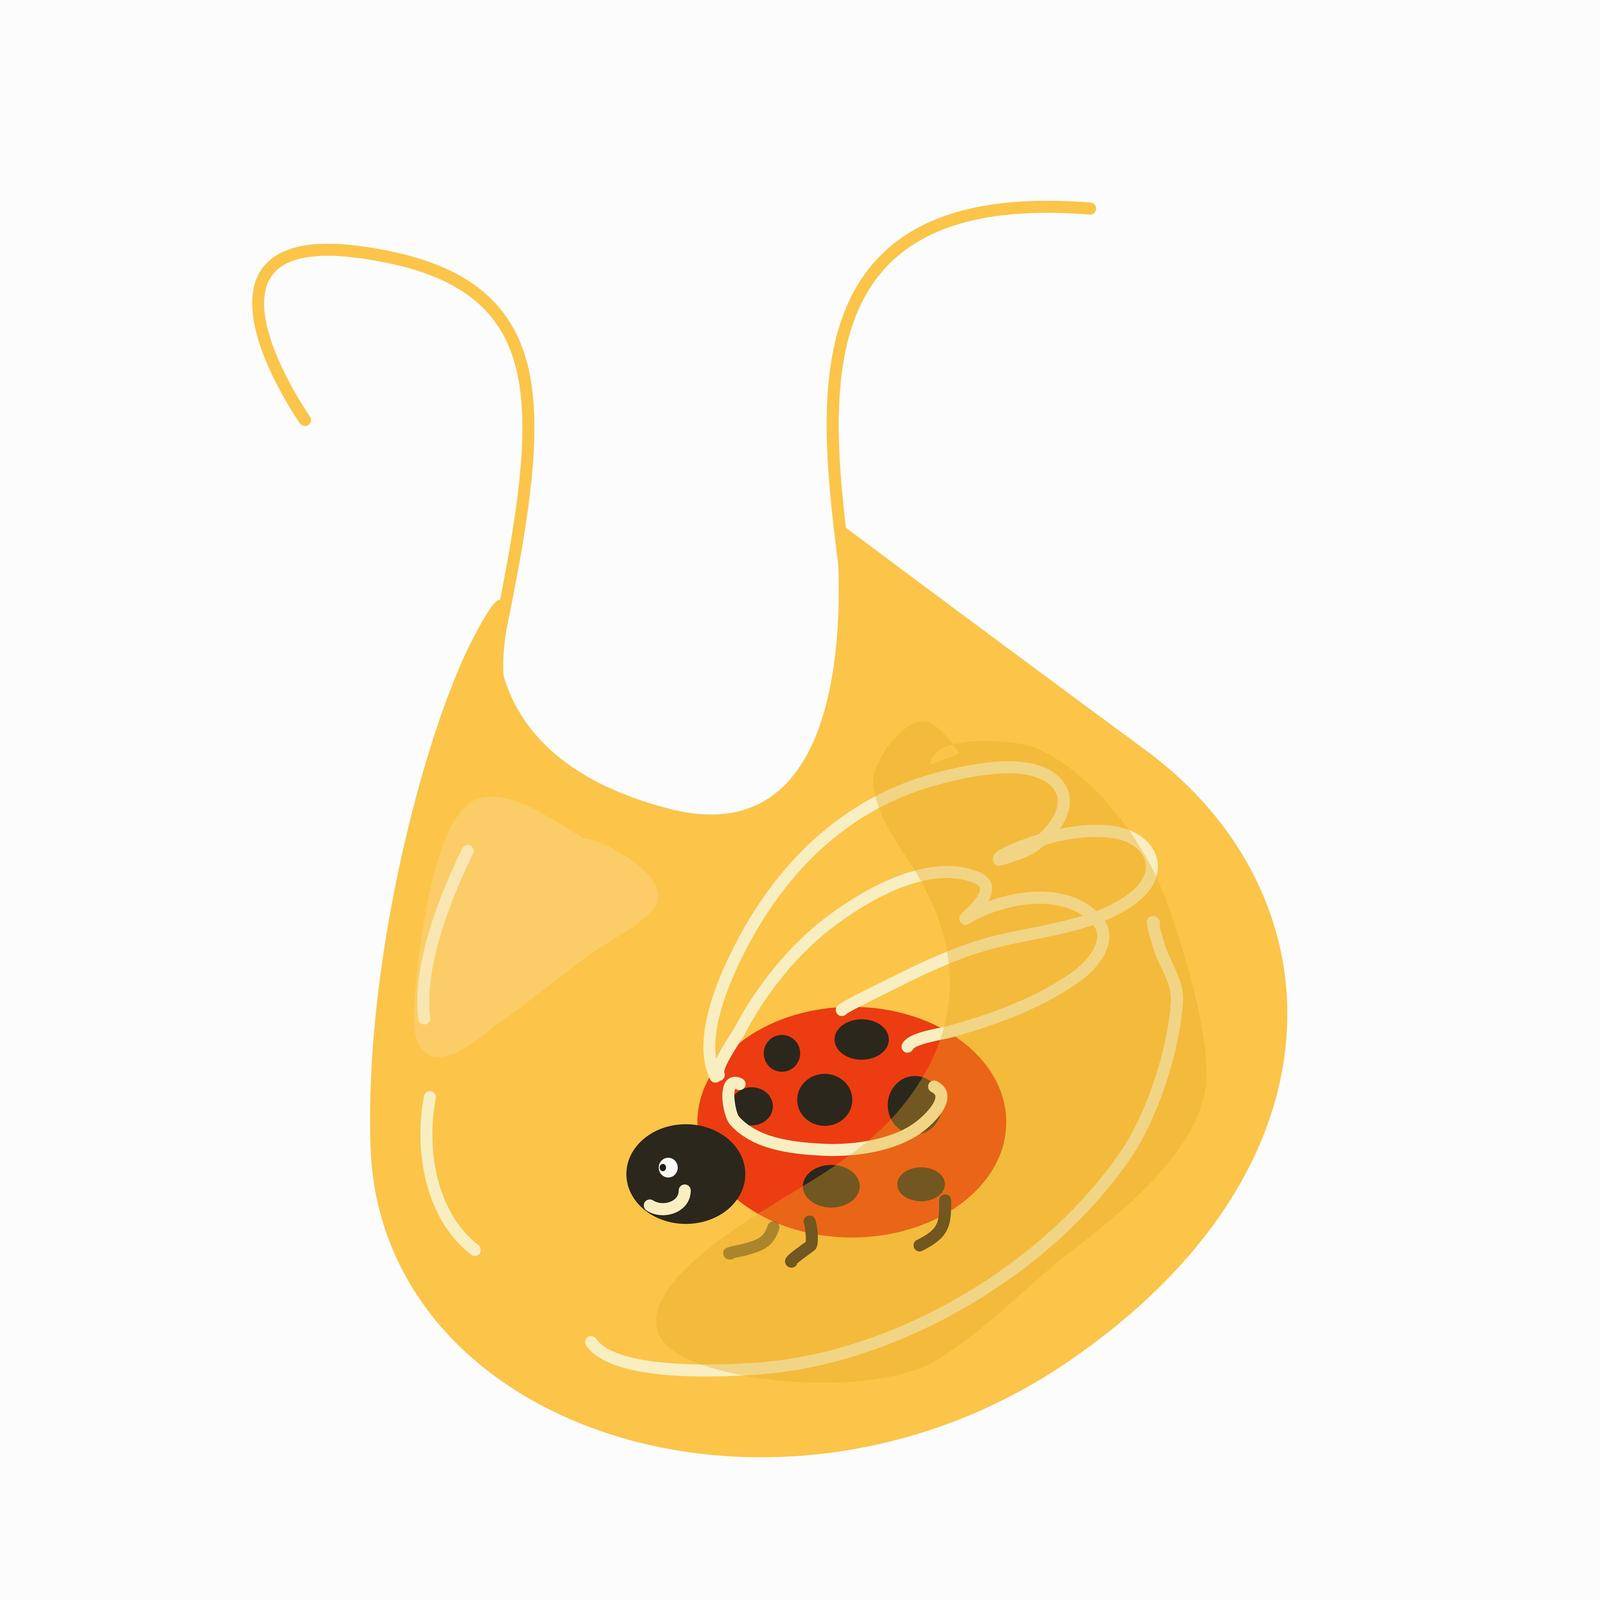 Baby bib with a funny ladybug by EvgeniyaEgorova